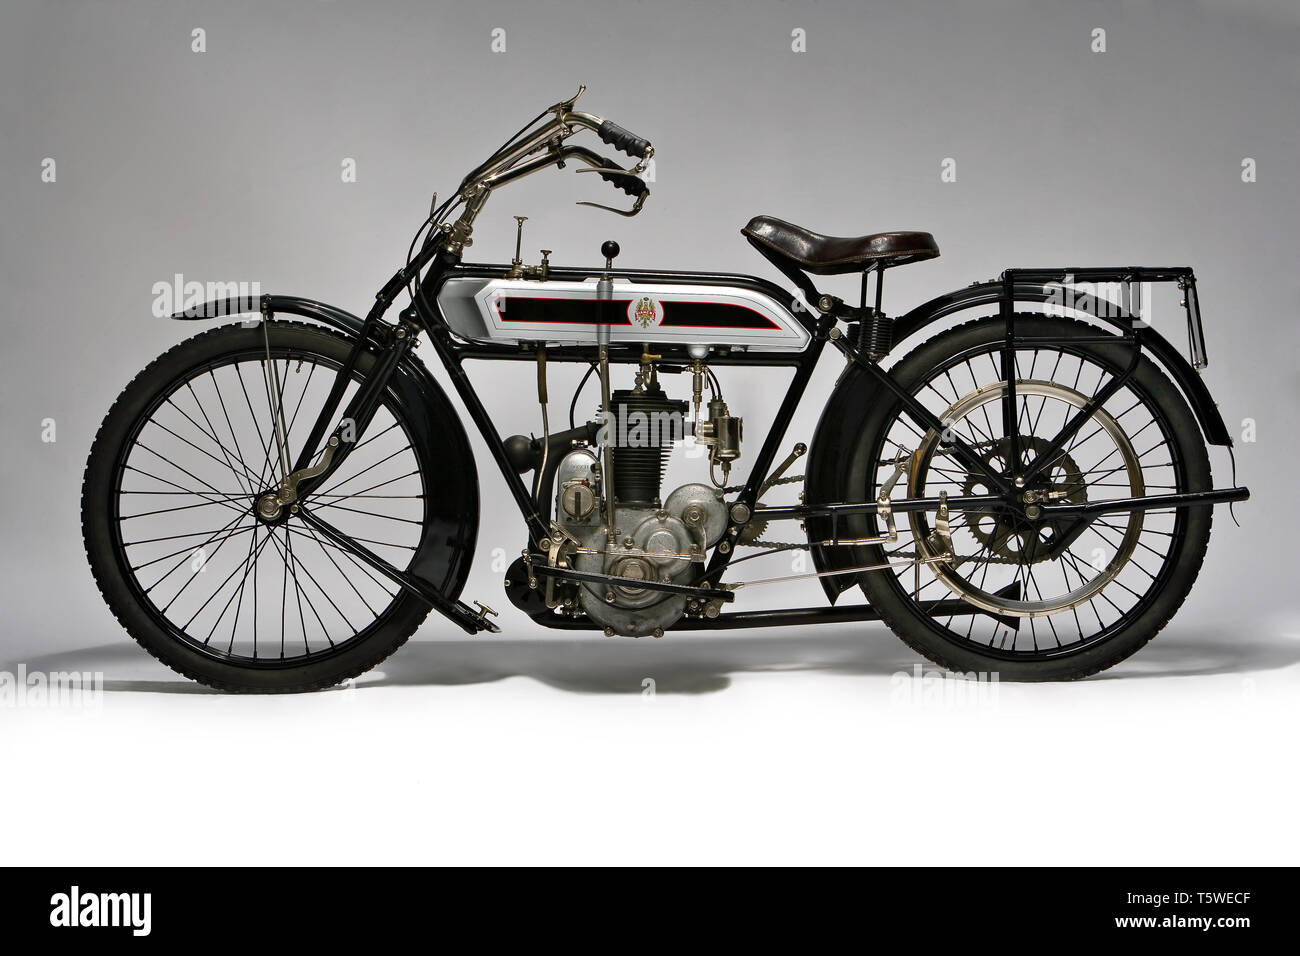 Moto d'epoca Bianchi C 75 A   fabbrica: Bianchi modello: C 75 A  fabbricata in: Italia - Milano anno: 1914 condizioni: restaurata cilin Stock Photo